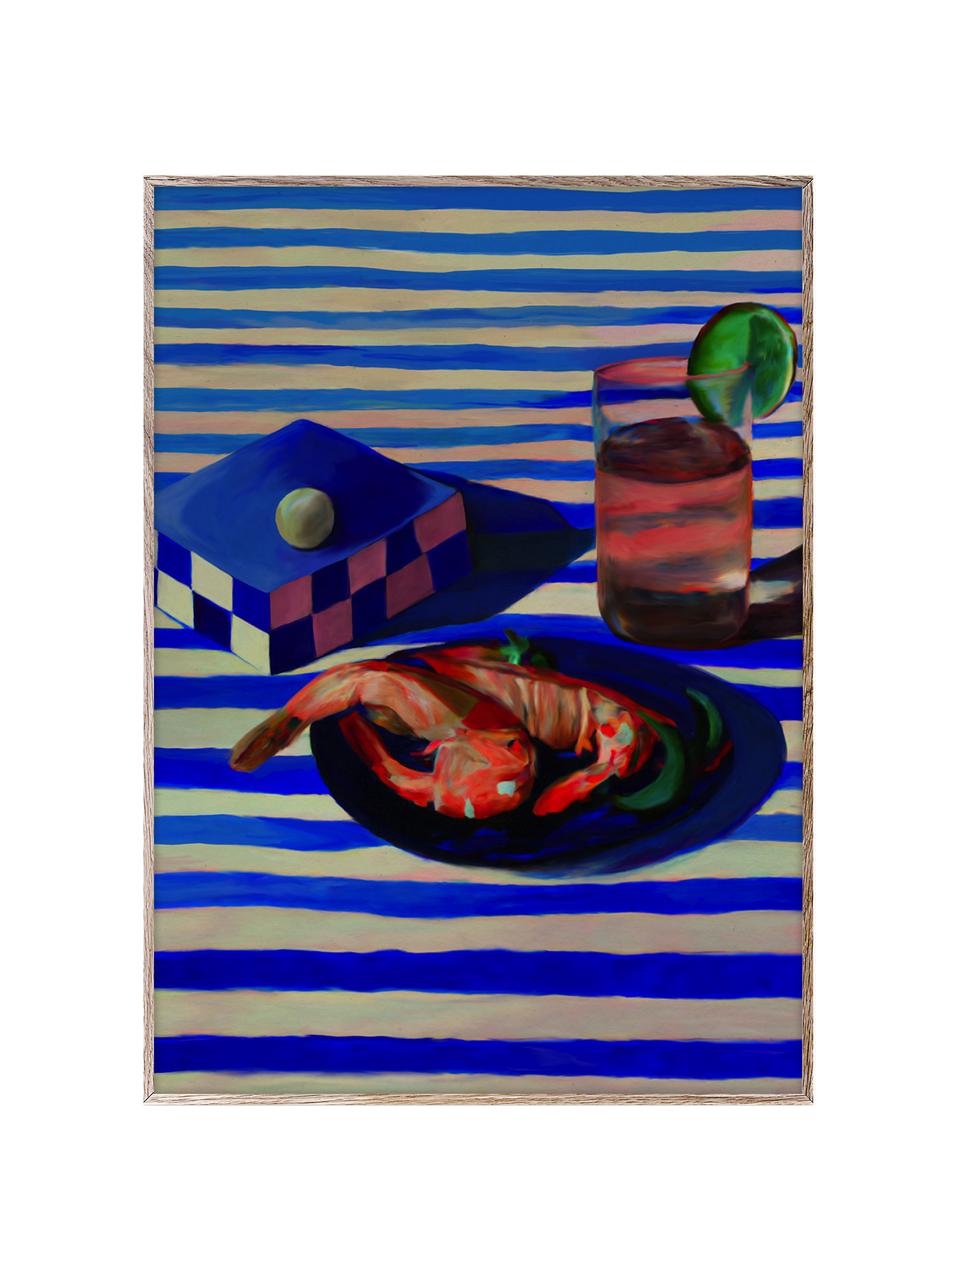 Plakát Shrimp & Stripes, 210g matný papír Hahnemühle, digitální tisk s 10 barvami odolnými vůči UV záření, Královská modrá, korálově červená, Š 30 cm, V 40 cm